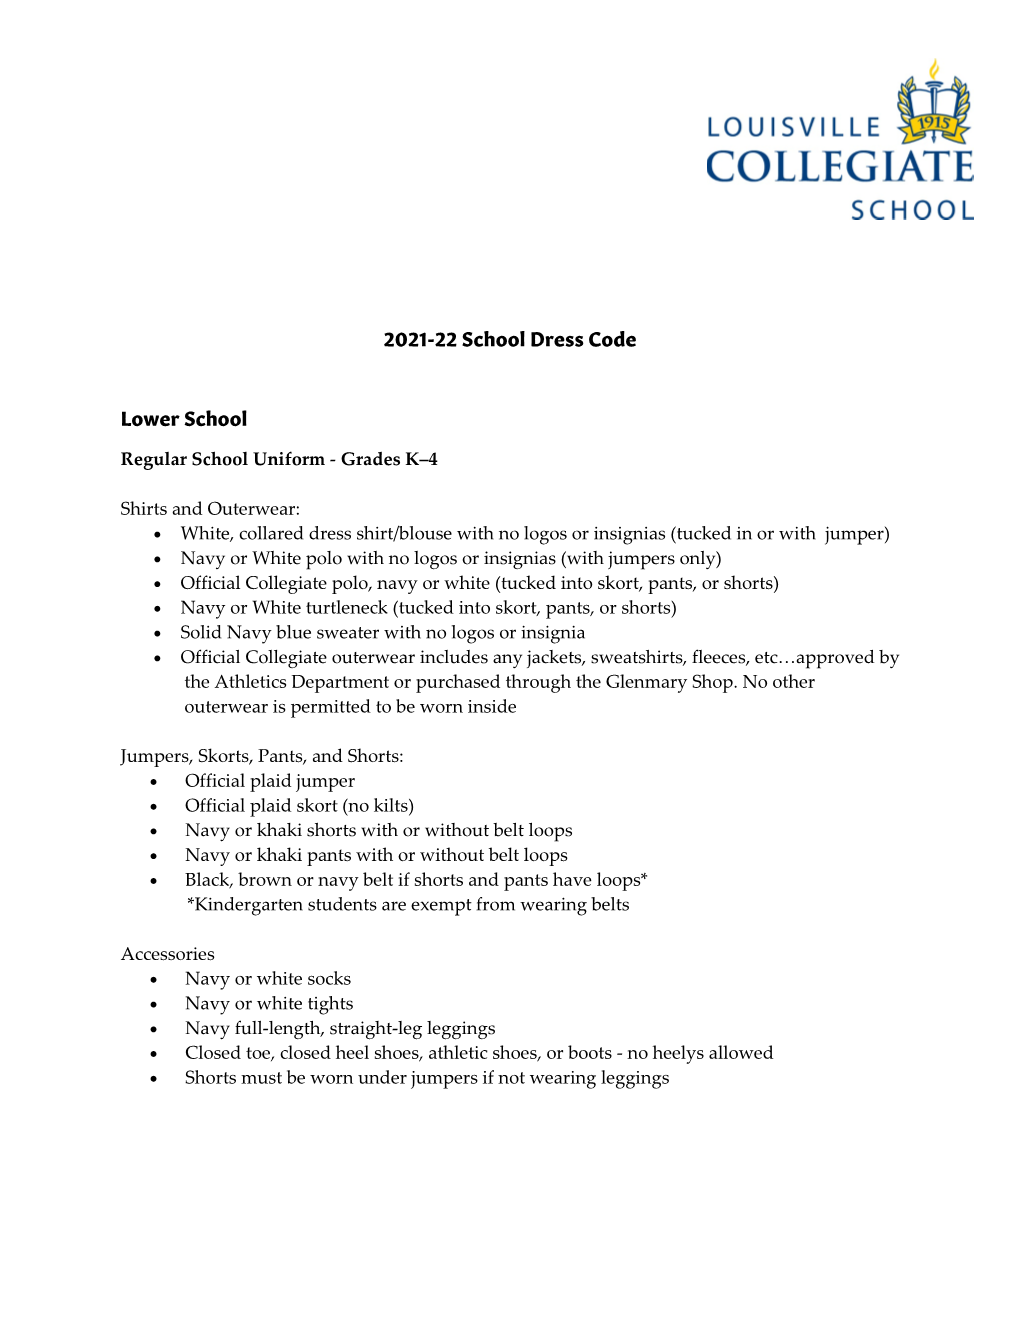 2021-22 School Dress Code Lower School